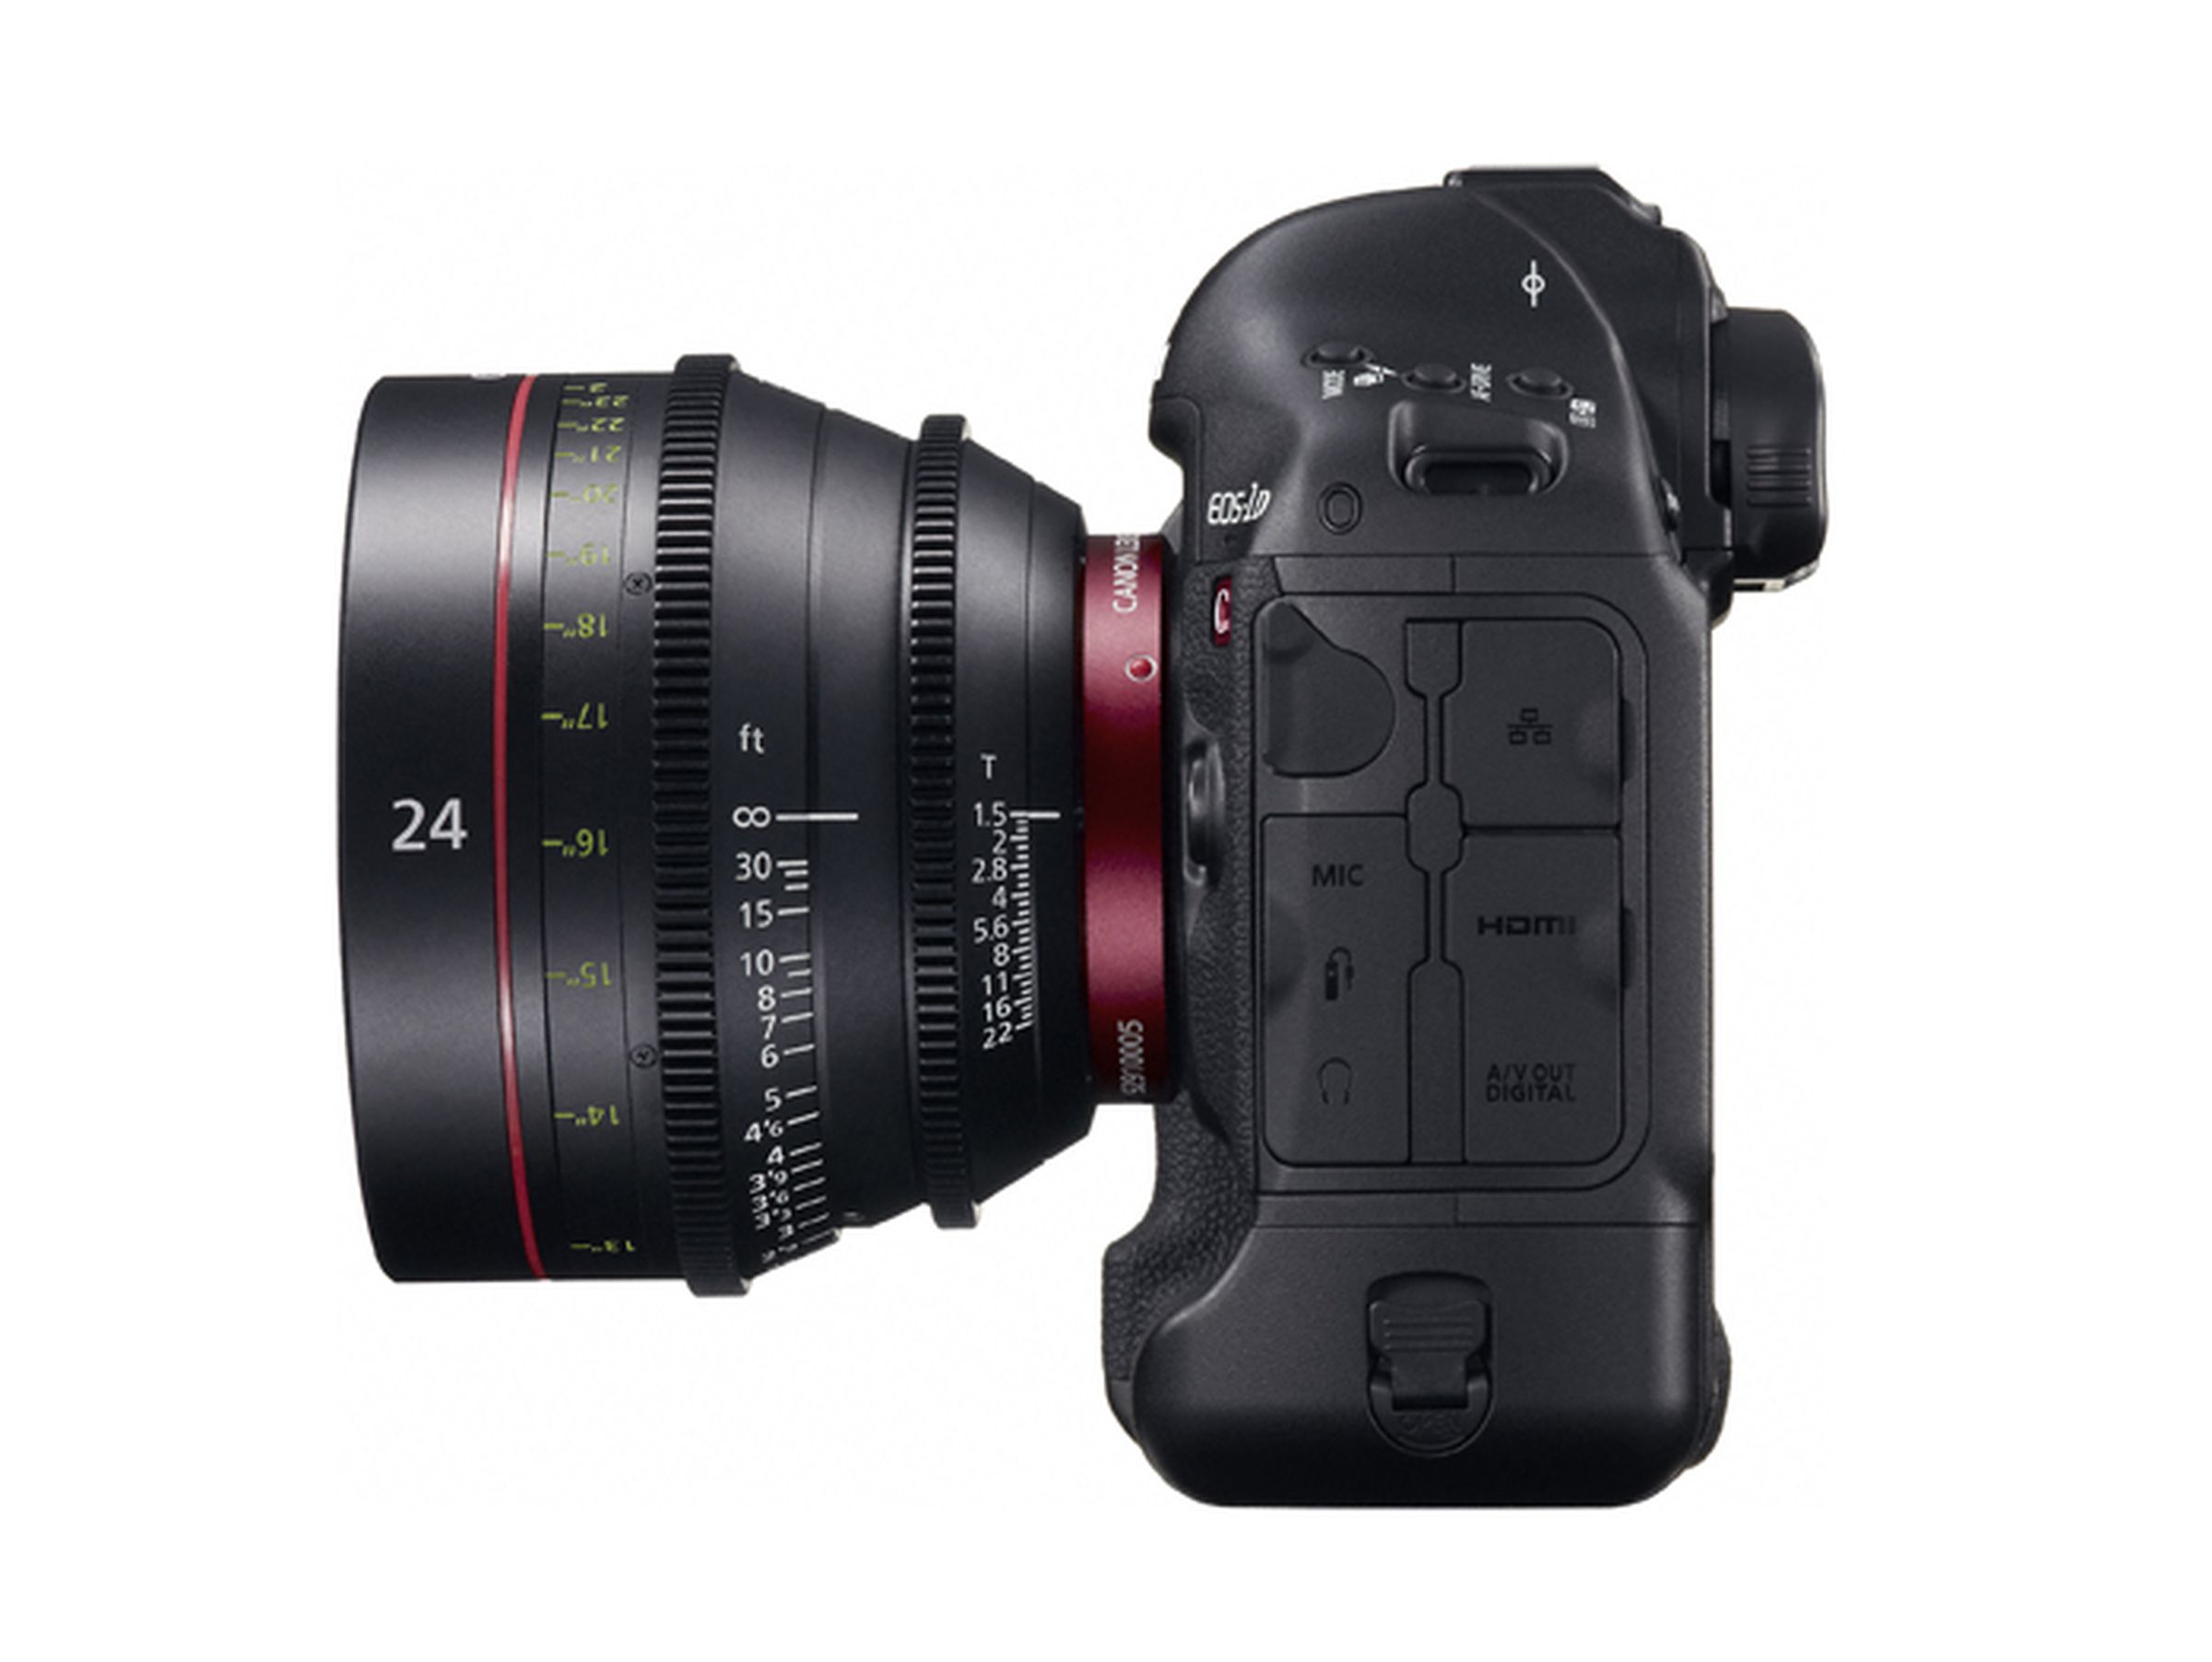 Canon EOS 1D C DSLR images